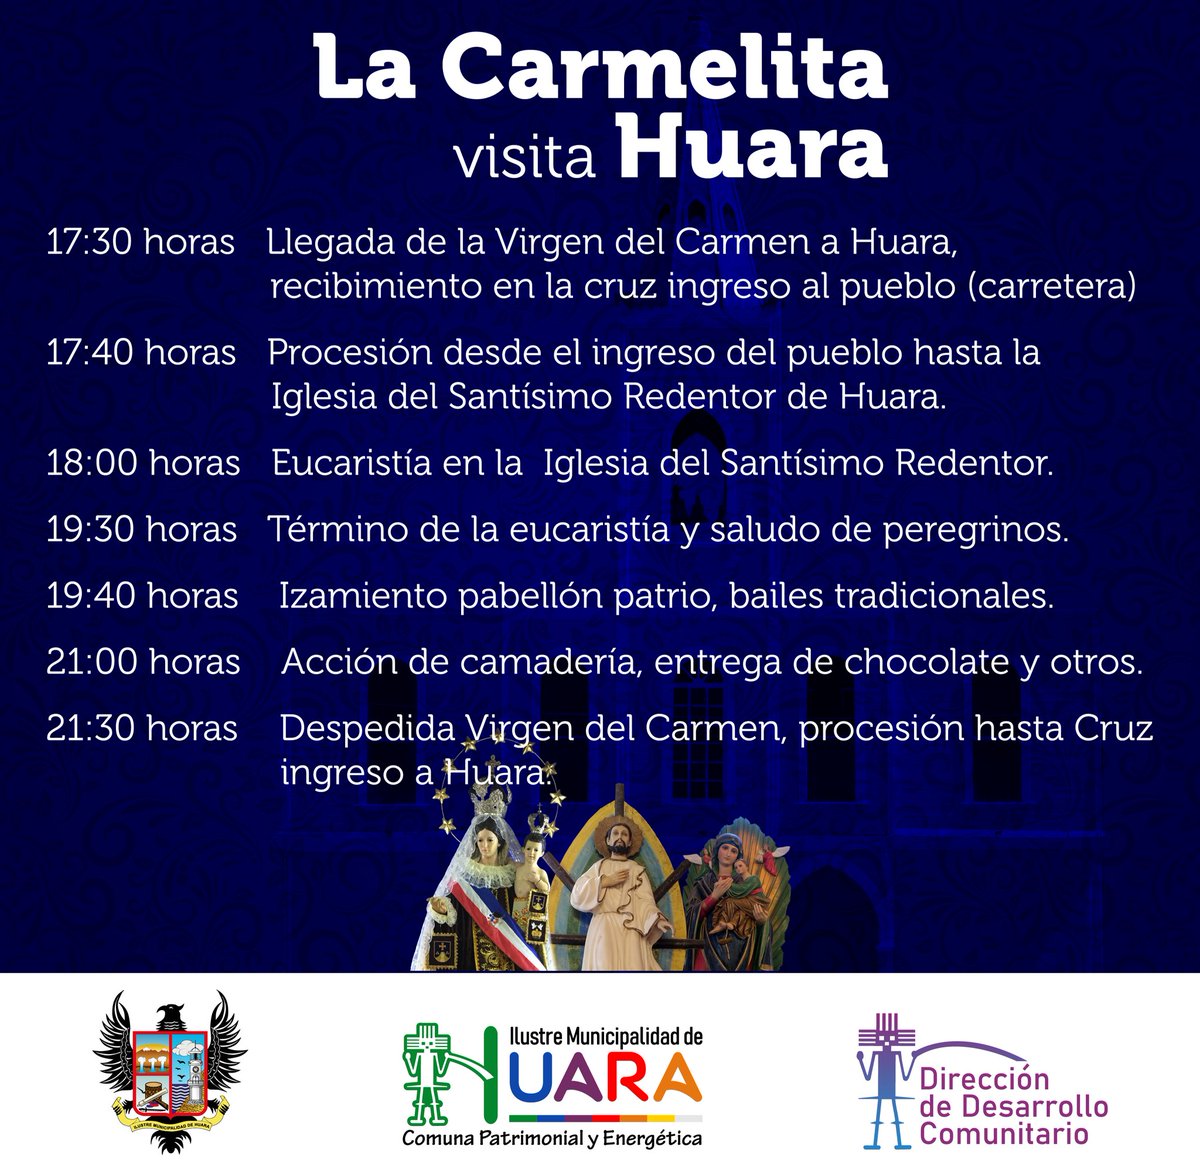 🤎🤍Estamos contando los días para tener a la 'Chinita' del Carmen en nuestra comuna. 

Te presentamos la programación de su visita a #Huara, que será este sábado 1.

La iglesia Santísimo Redentor, en colaboración con la @IM_HUARA, prepararon esta linda celebración.🌹🌷

#Iquique